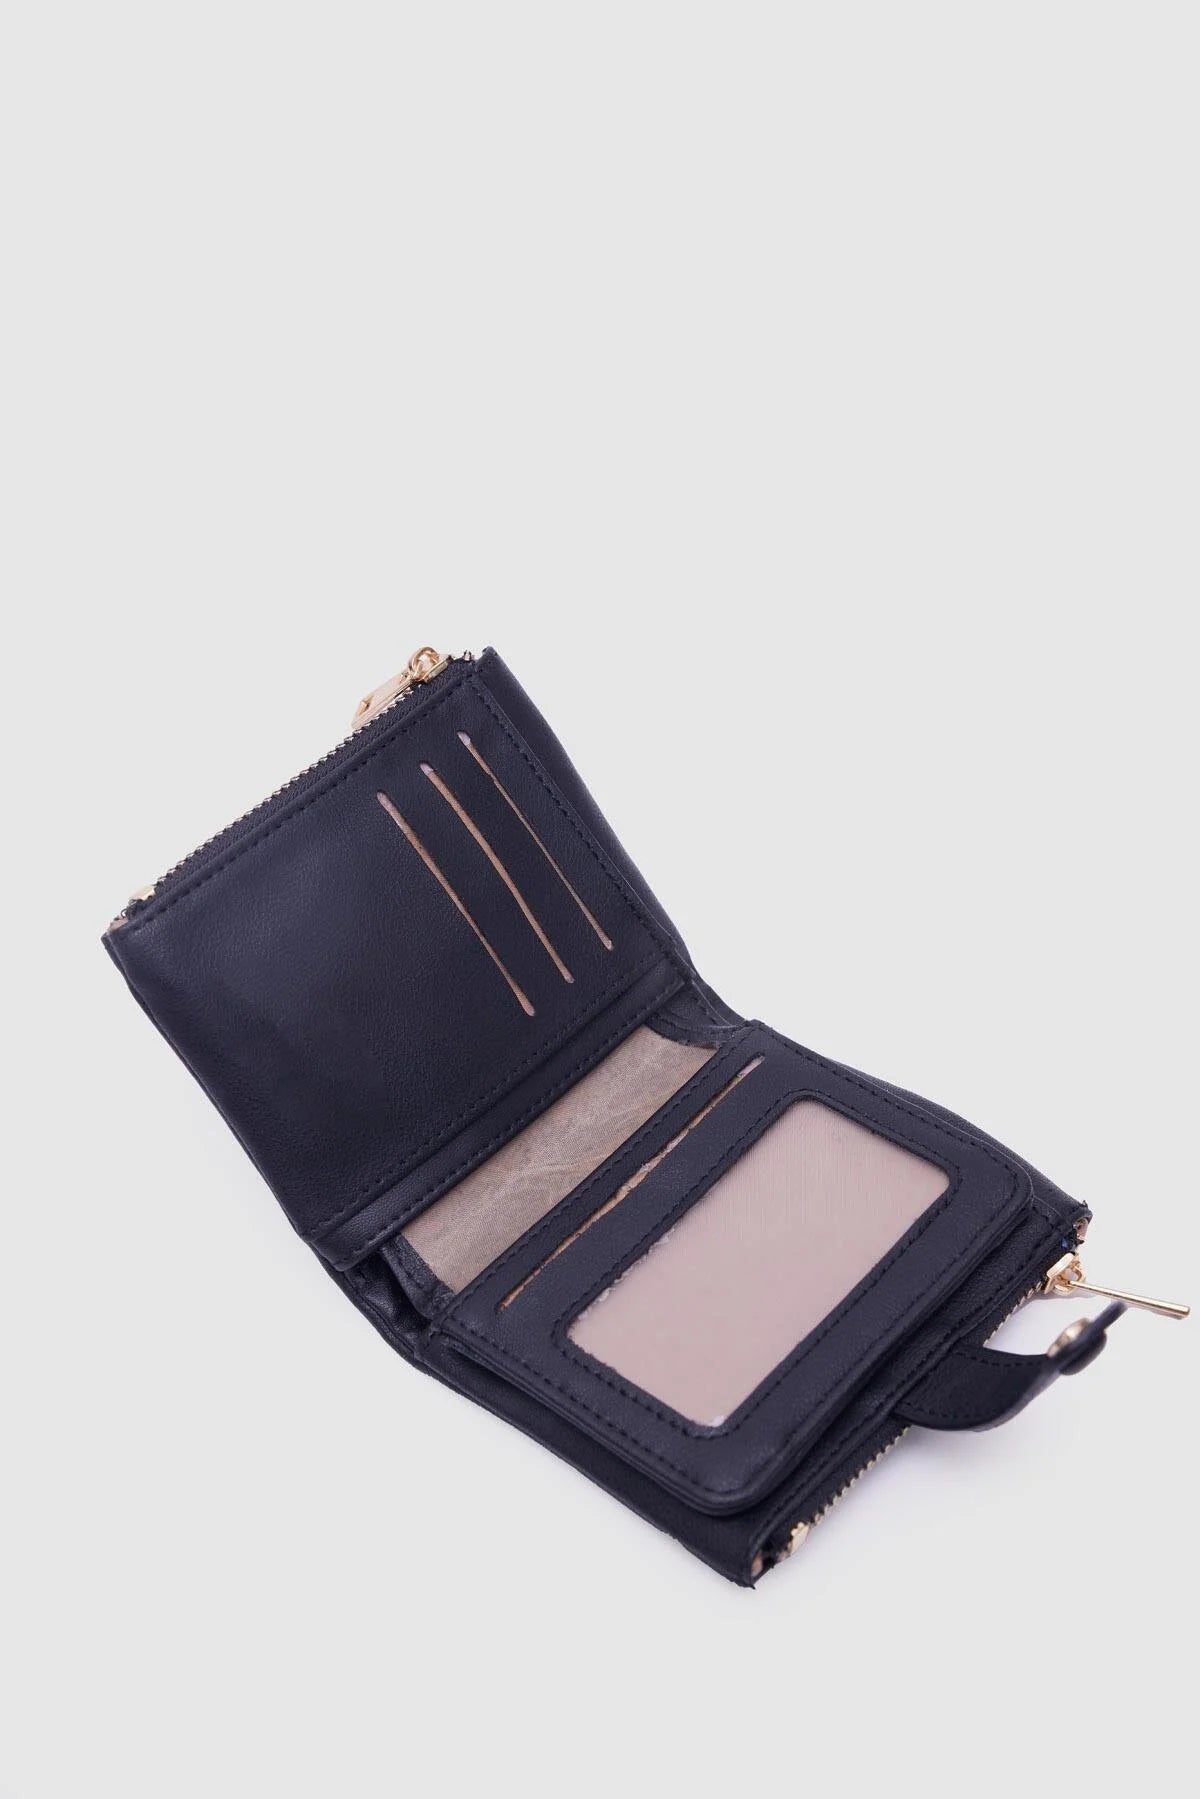 Soft Leather Black Wallet wallet LUNARITY GARAGE   